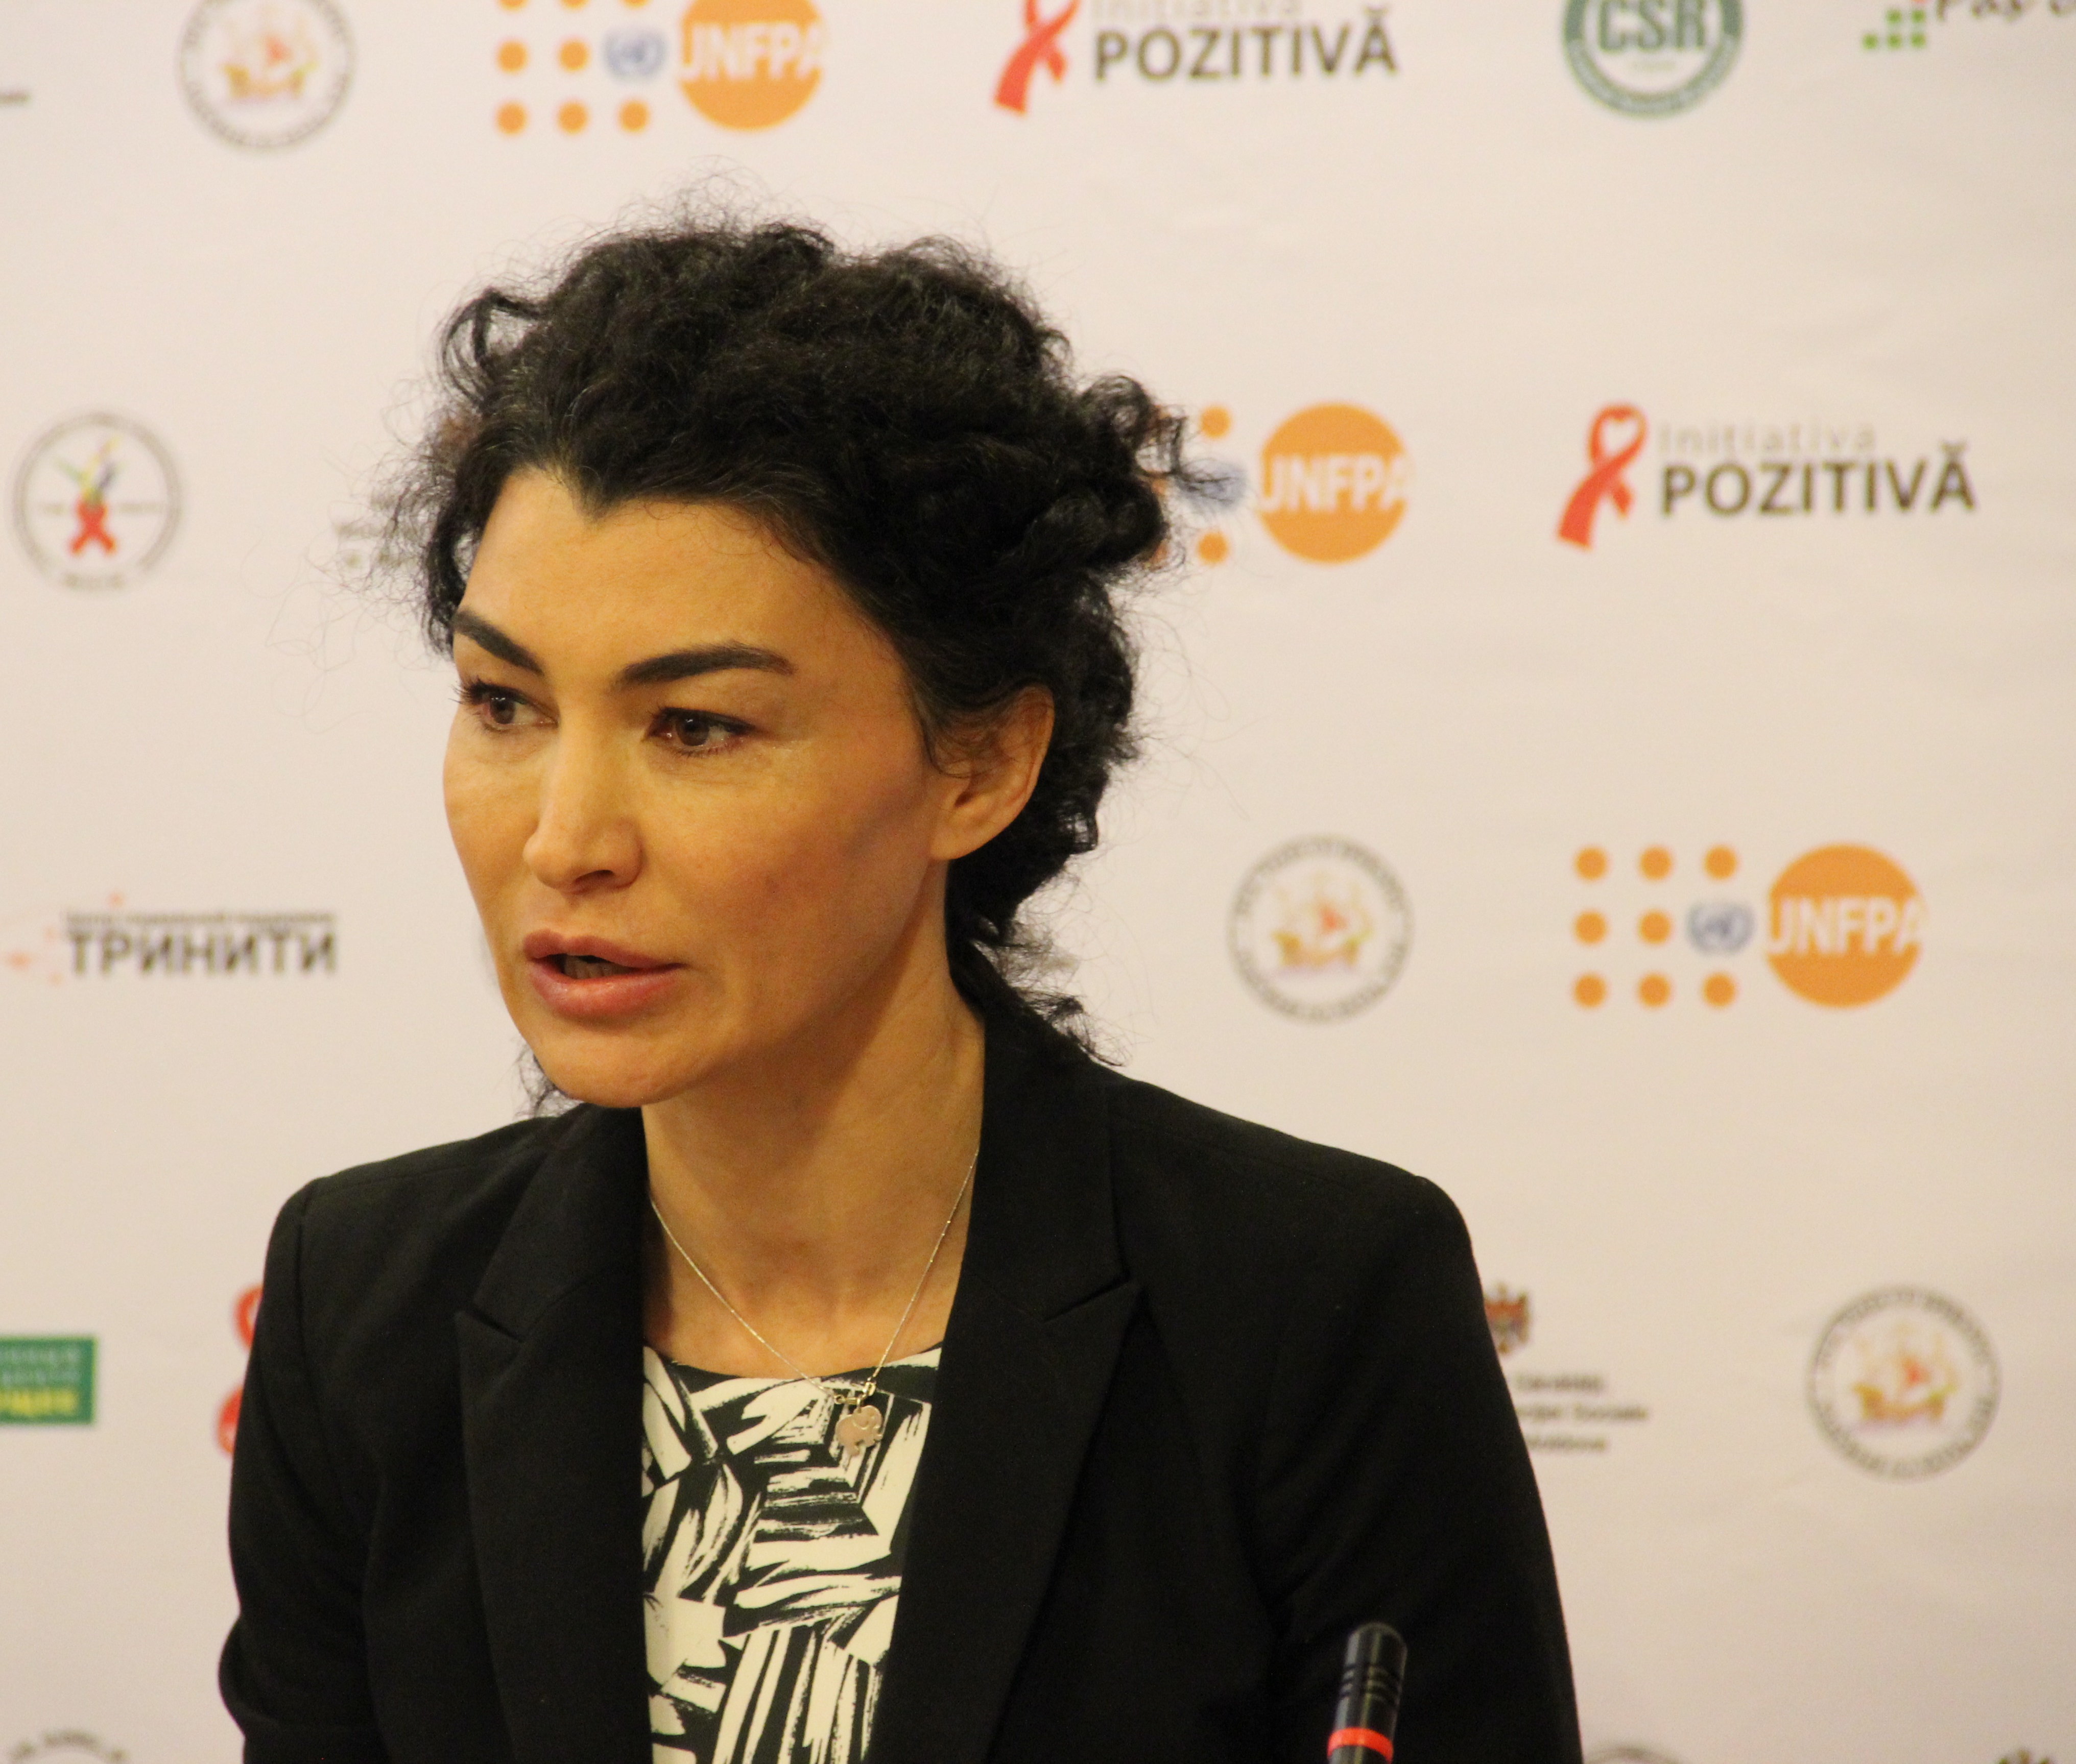 Rita Columbia, Reprezentanta UNFPA în Moldova: “Cu resurse mici, am reuşit foarte multe”